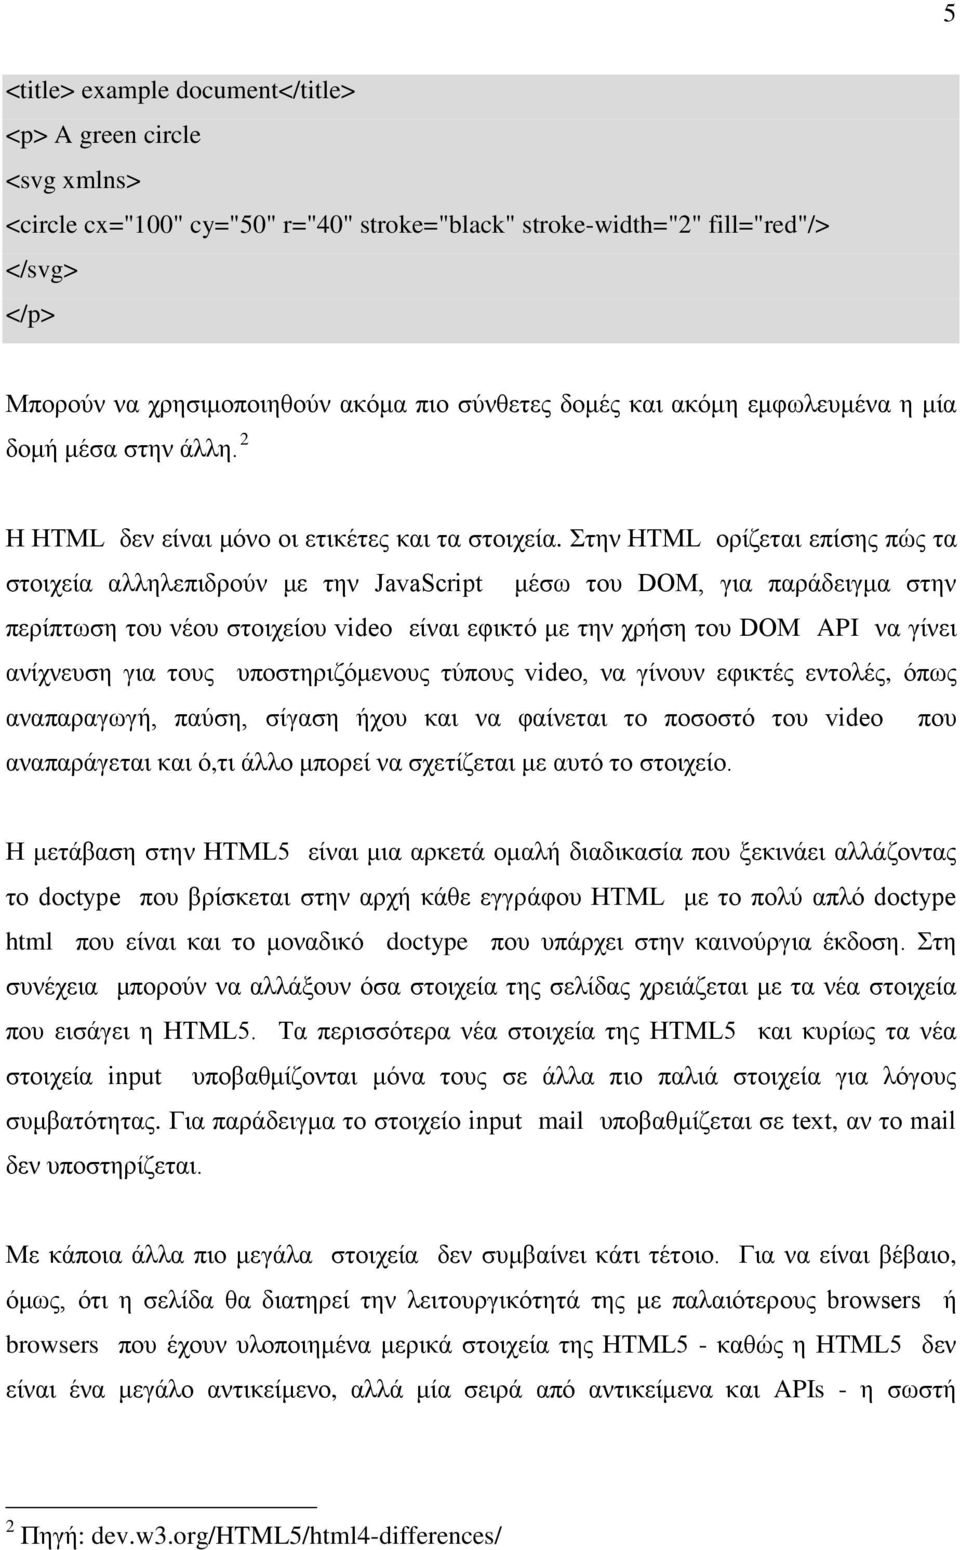 Στην HTML ορίζεται επίσης πώς τα στοιχεία αλληλεπιδρούν με την JavaScript μέσω του DOM, για παράδειγμα στην περίπτωση του νέου στοιχείου video είναι εφικτό με την χρήση του DOM API να γίνει ανίχνευση